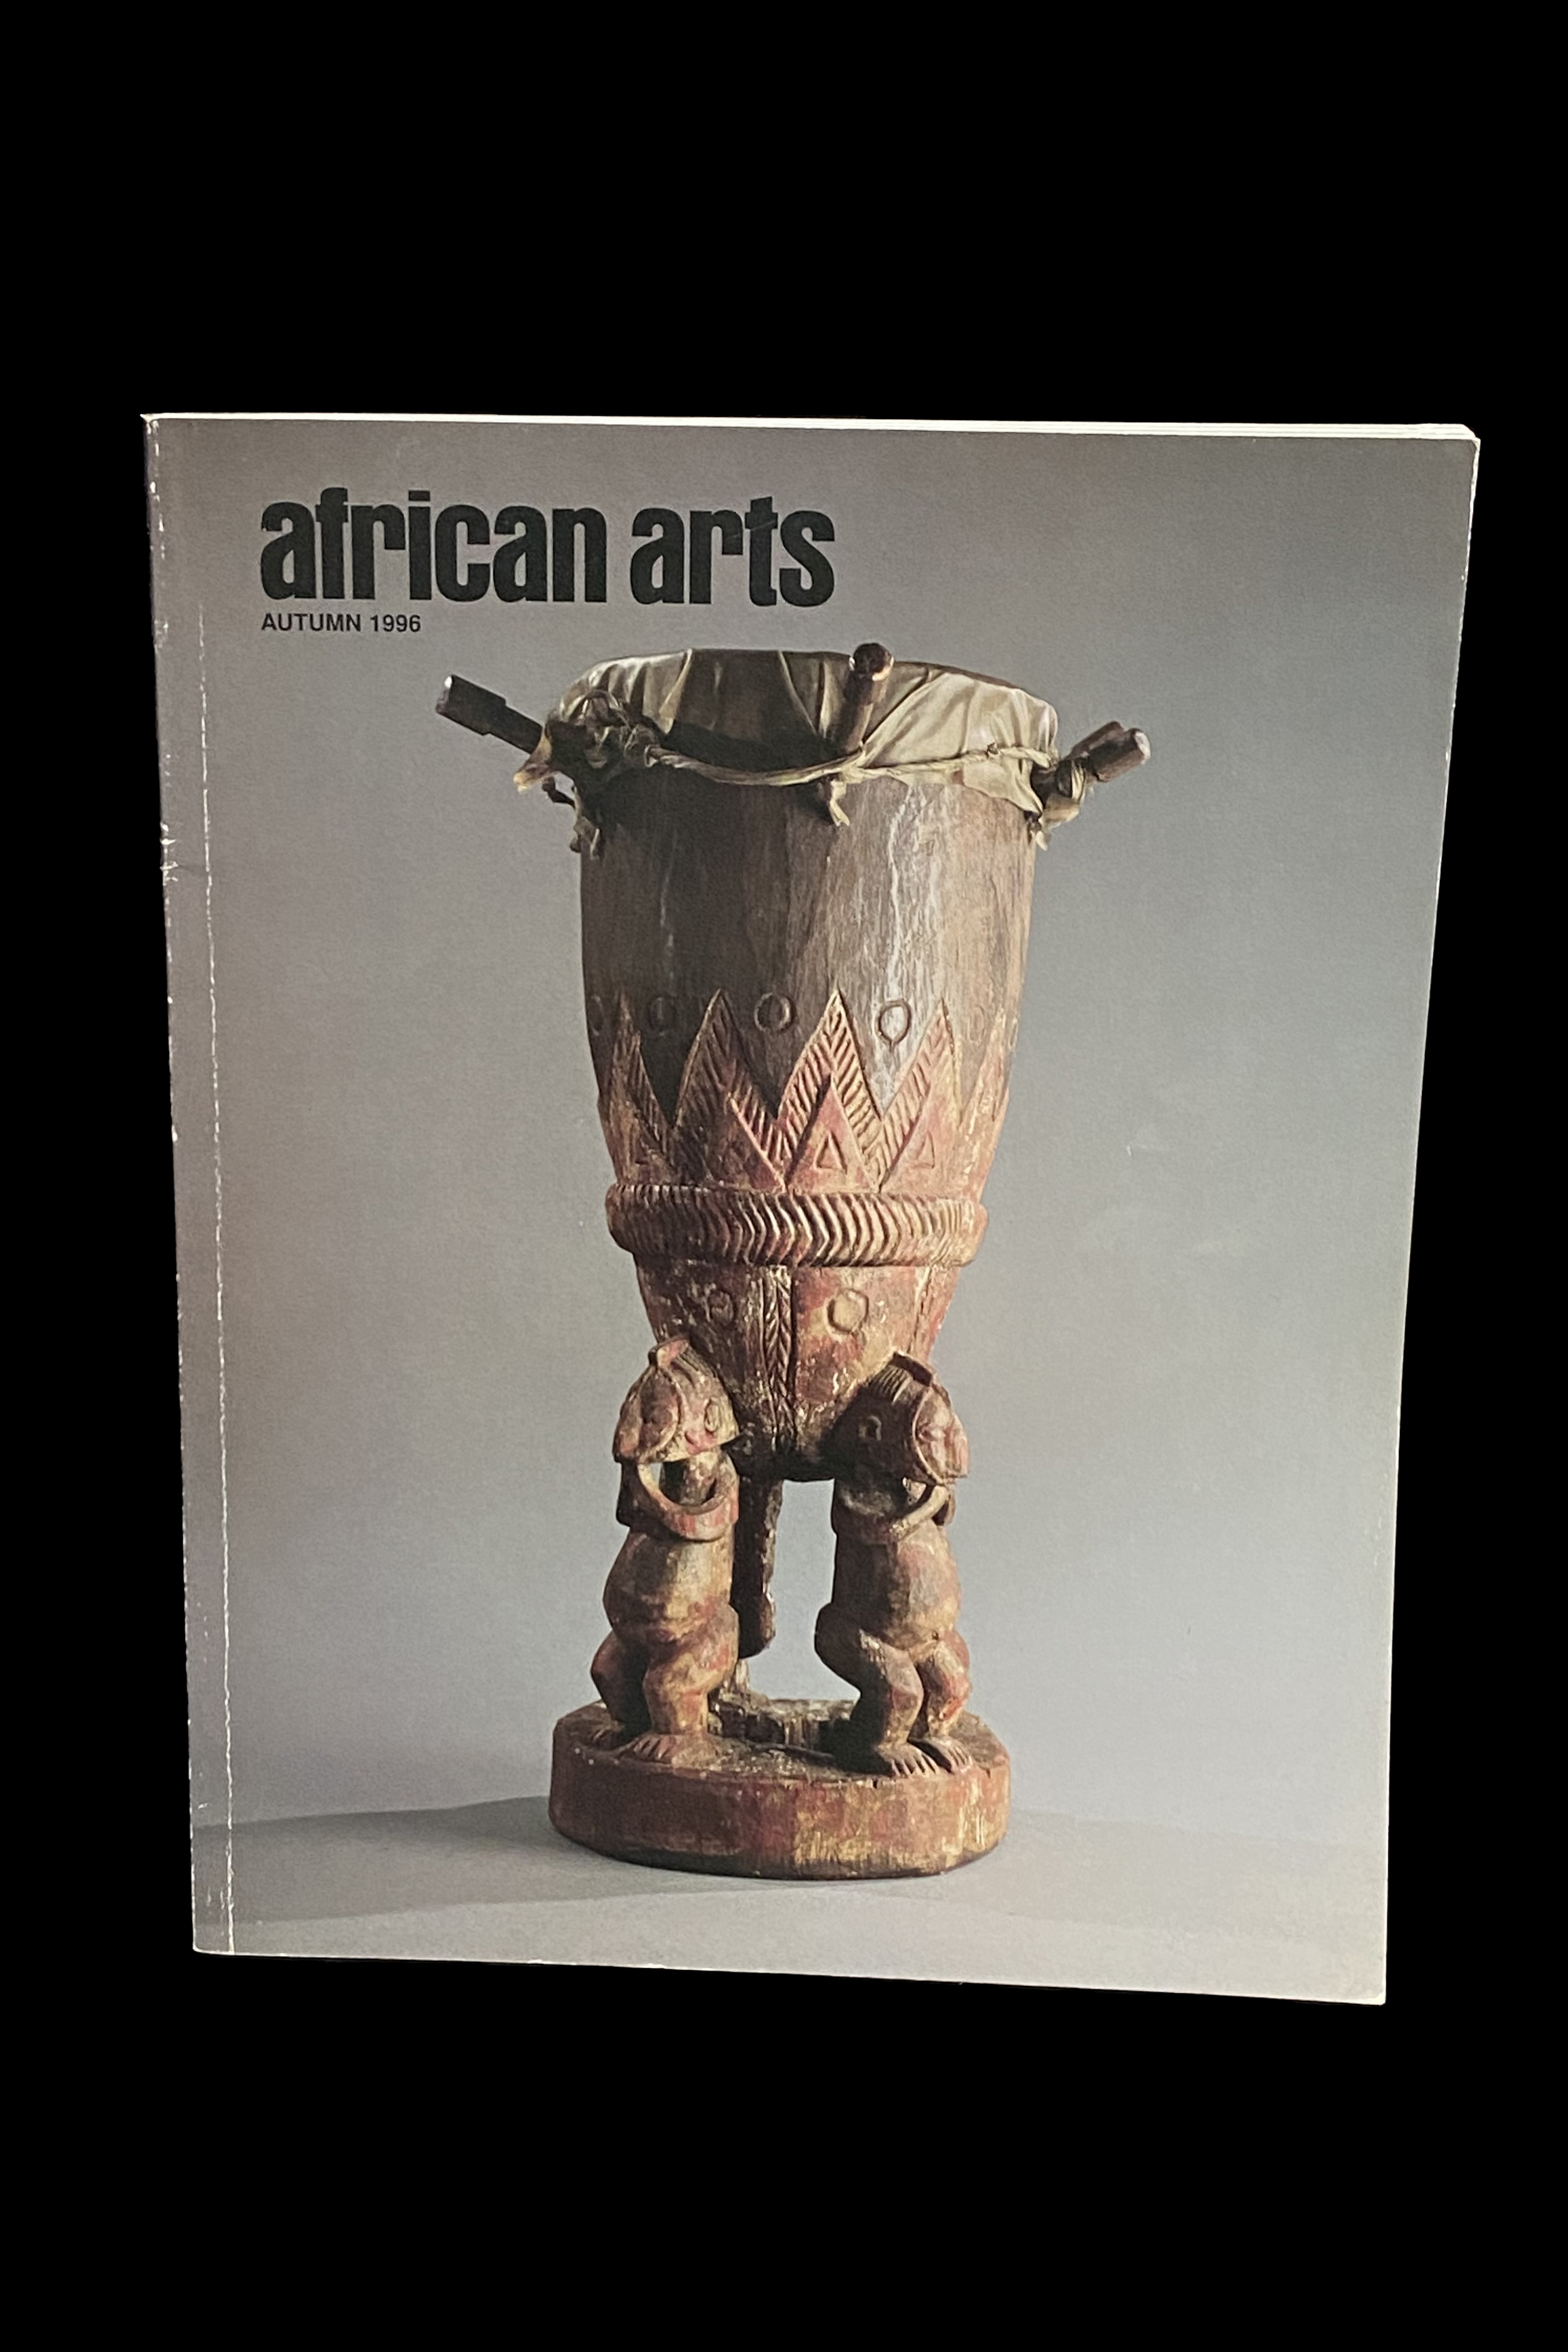  African Arts Magazine - Autumn 1996